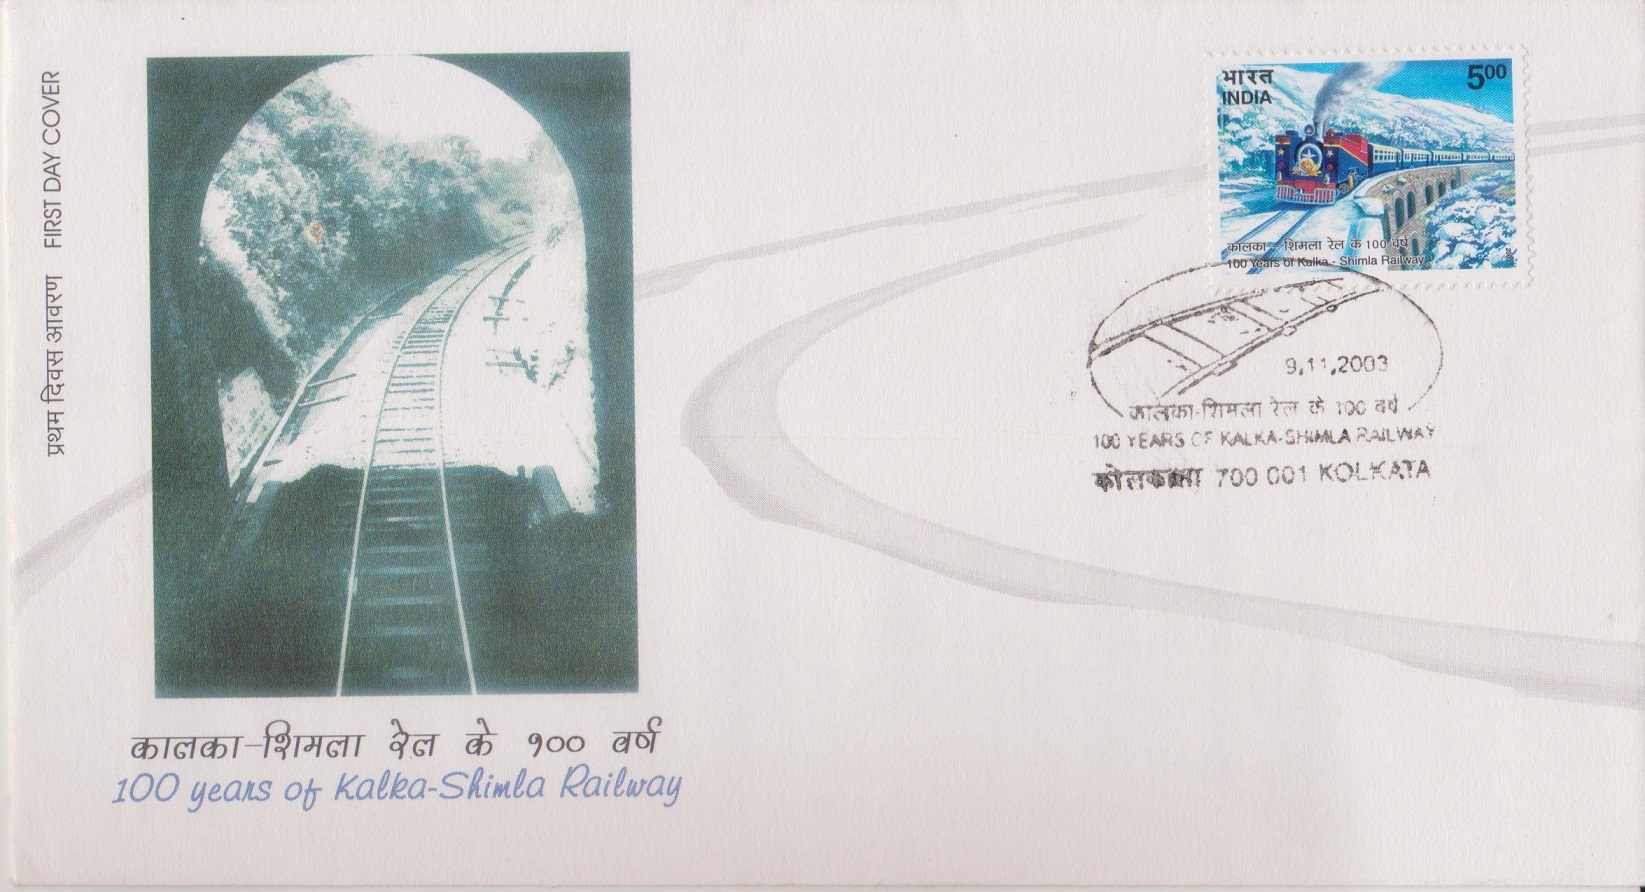  Kalka-Shimla Railway